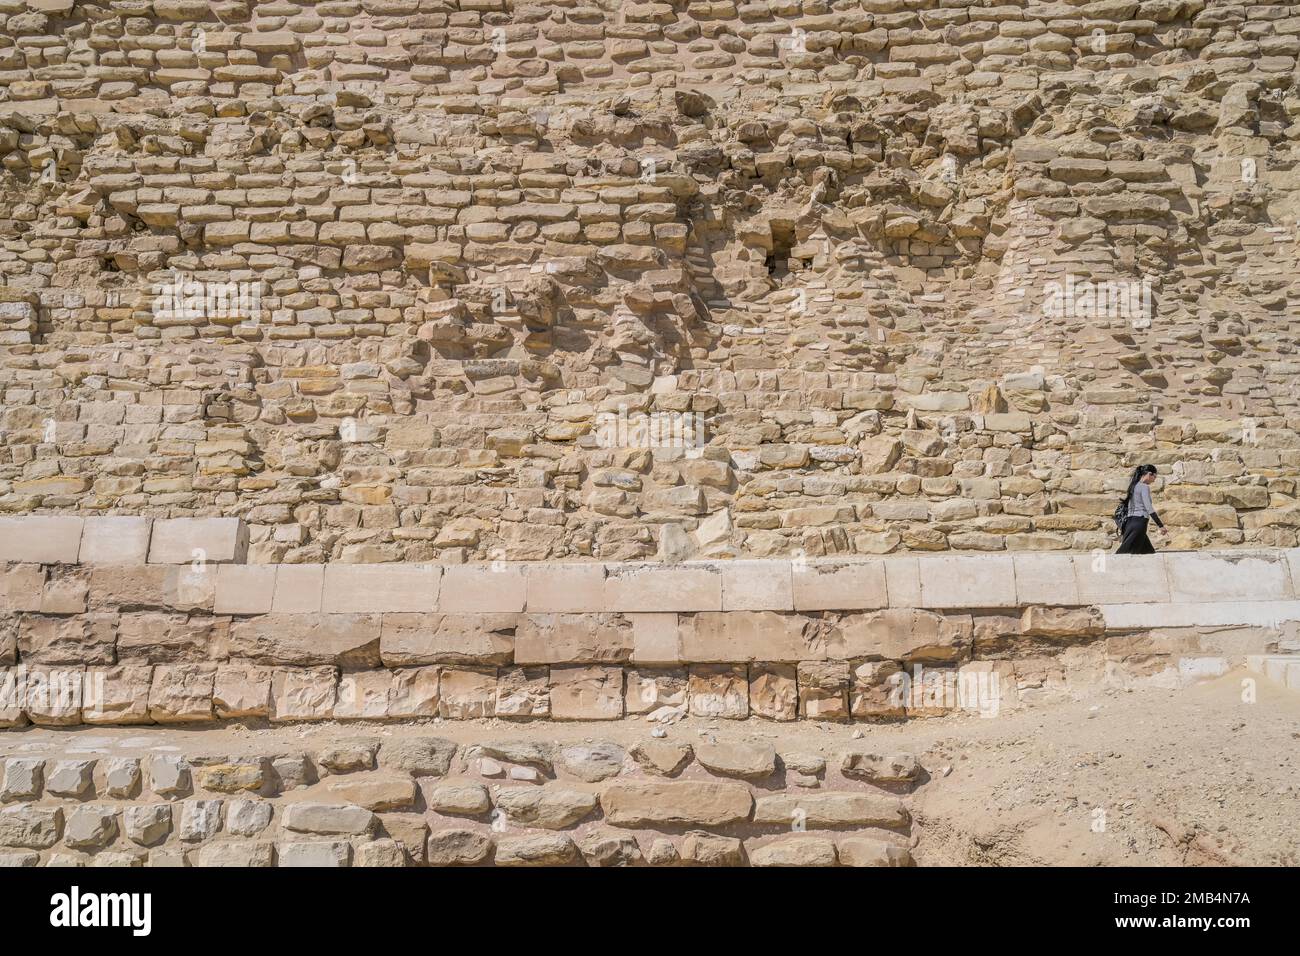 Stiftung, untere Steinreihen, Stufenpyramide von König Djoser, Nekropole von Sakkara, Ägypten Stockfoto